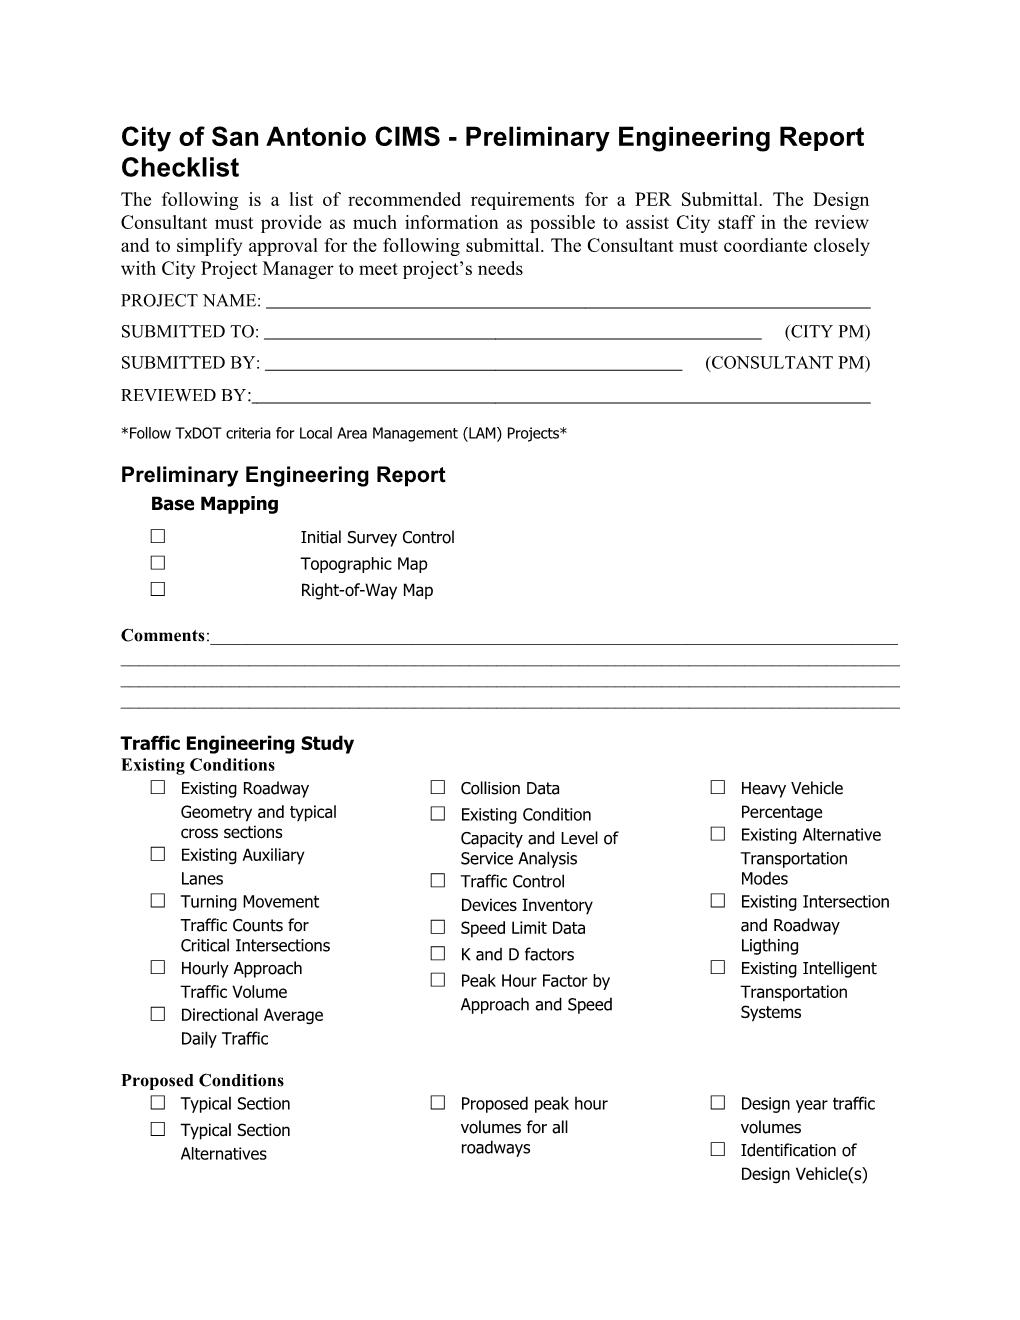 City of San Antonio CIMS - Preliminary Engineering Report Checklist